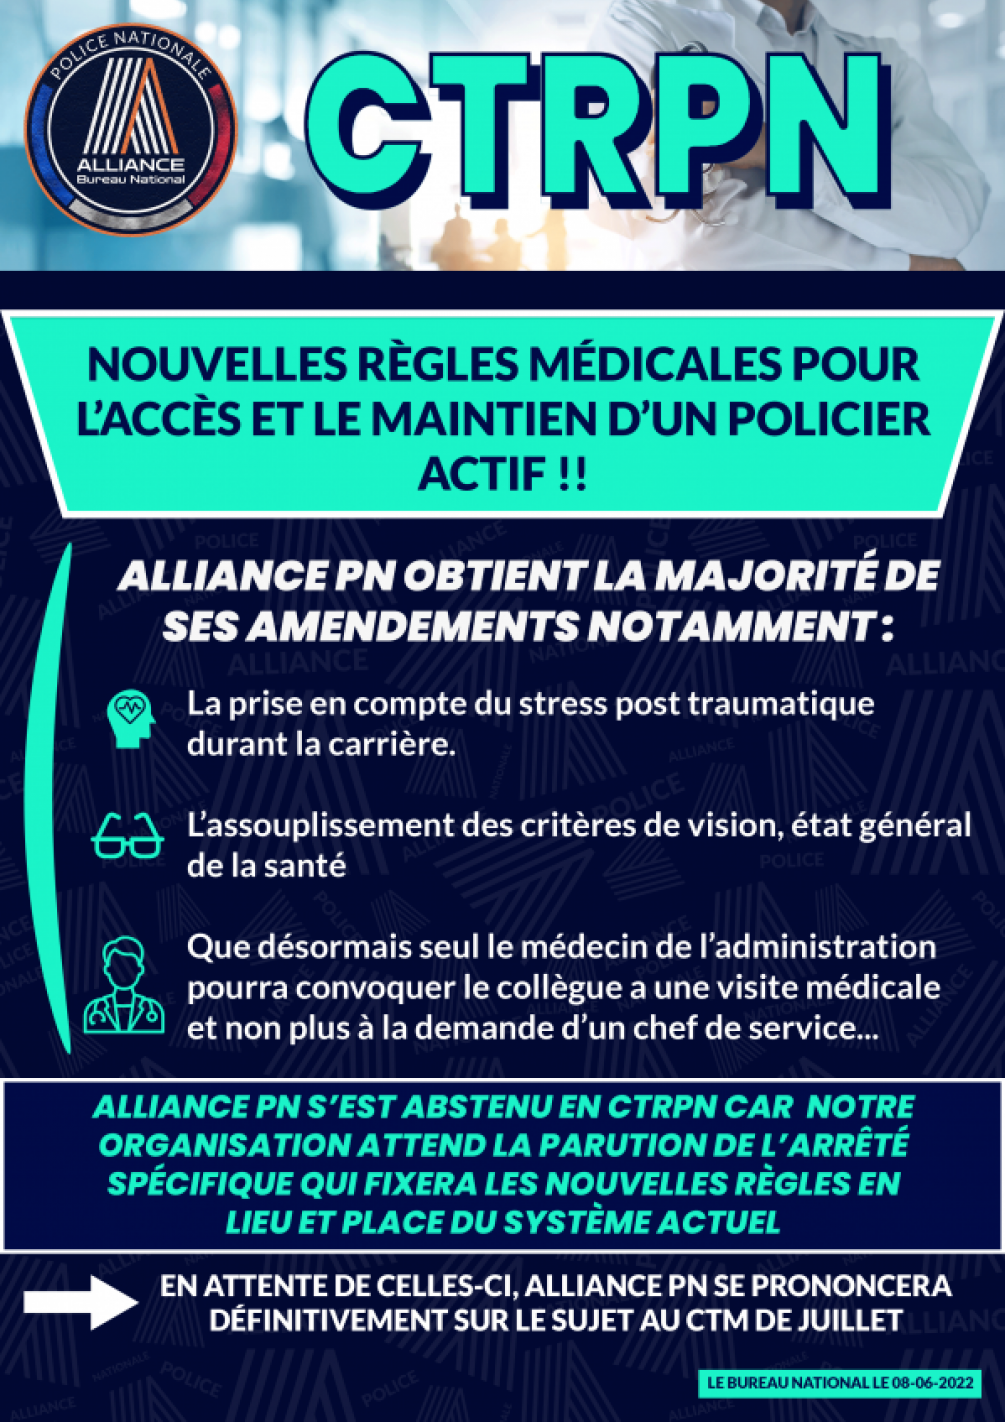 CTRPN NOUVELLES REGLES MÉDICALES POUR L'ACCÉS ET LE MAINTIEN D'UN POLICIER ACTIF !!